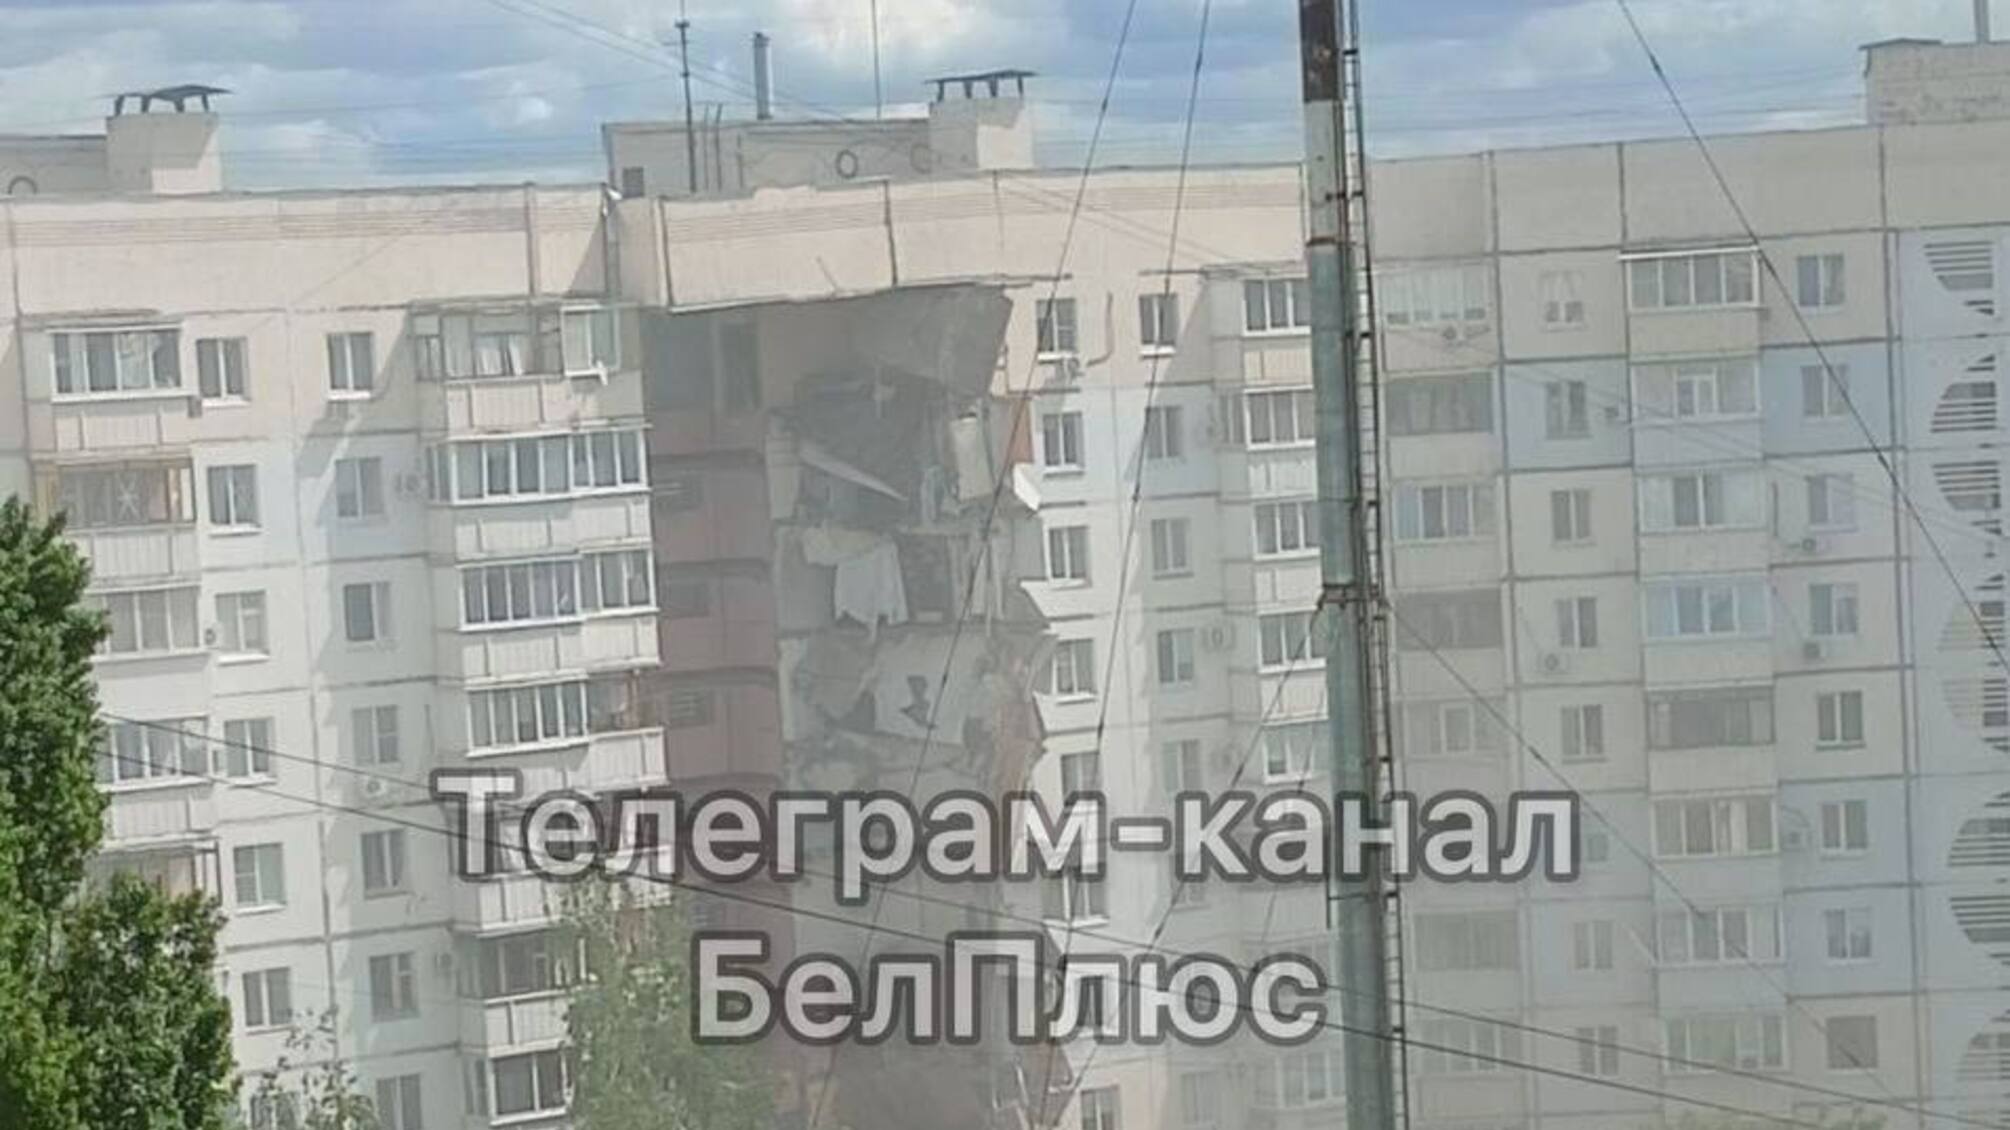  У Бєлгороді обвалився підʼїзд багатоповерхівки, є загиблі та постраждалі: влада рф звинувачує у цьому Україну (фото,відео)